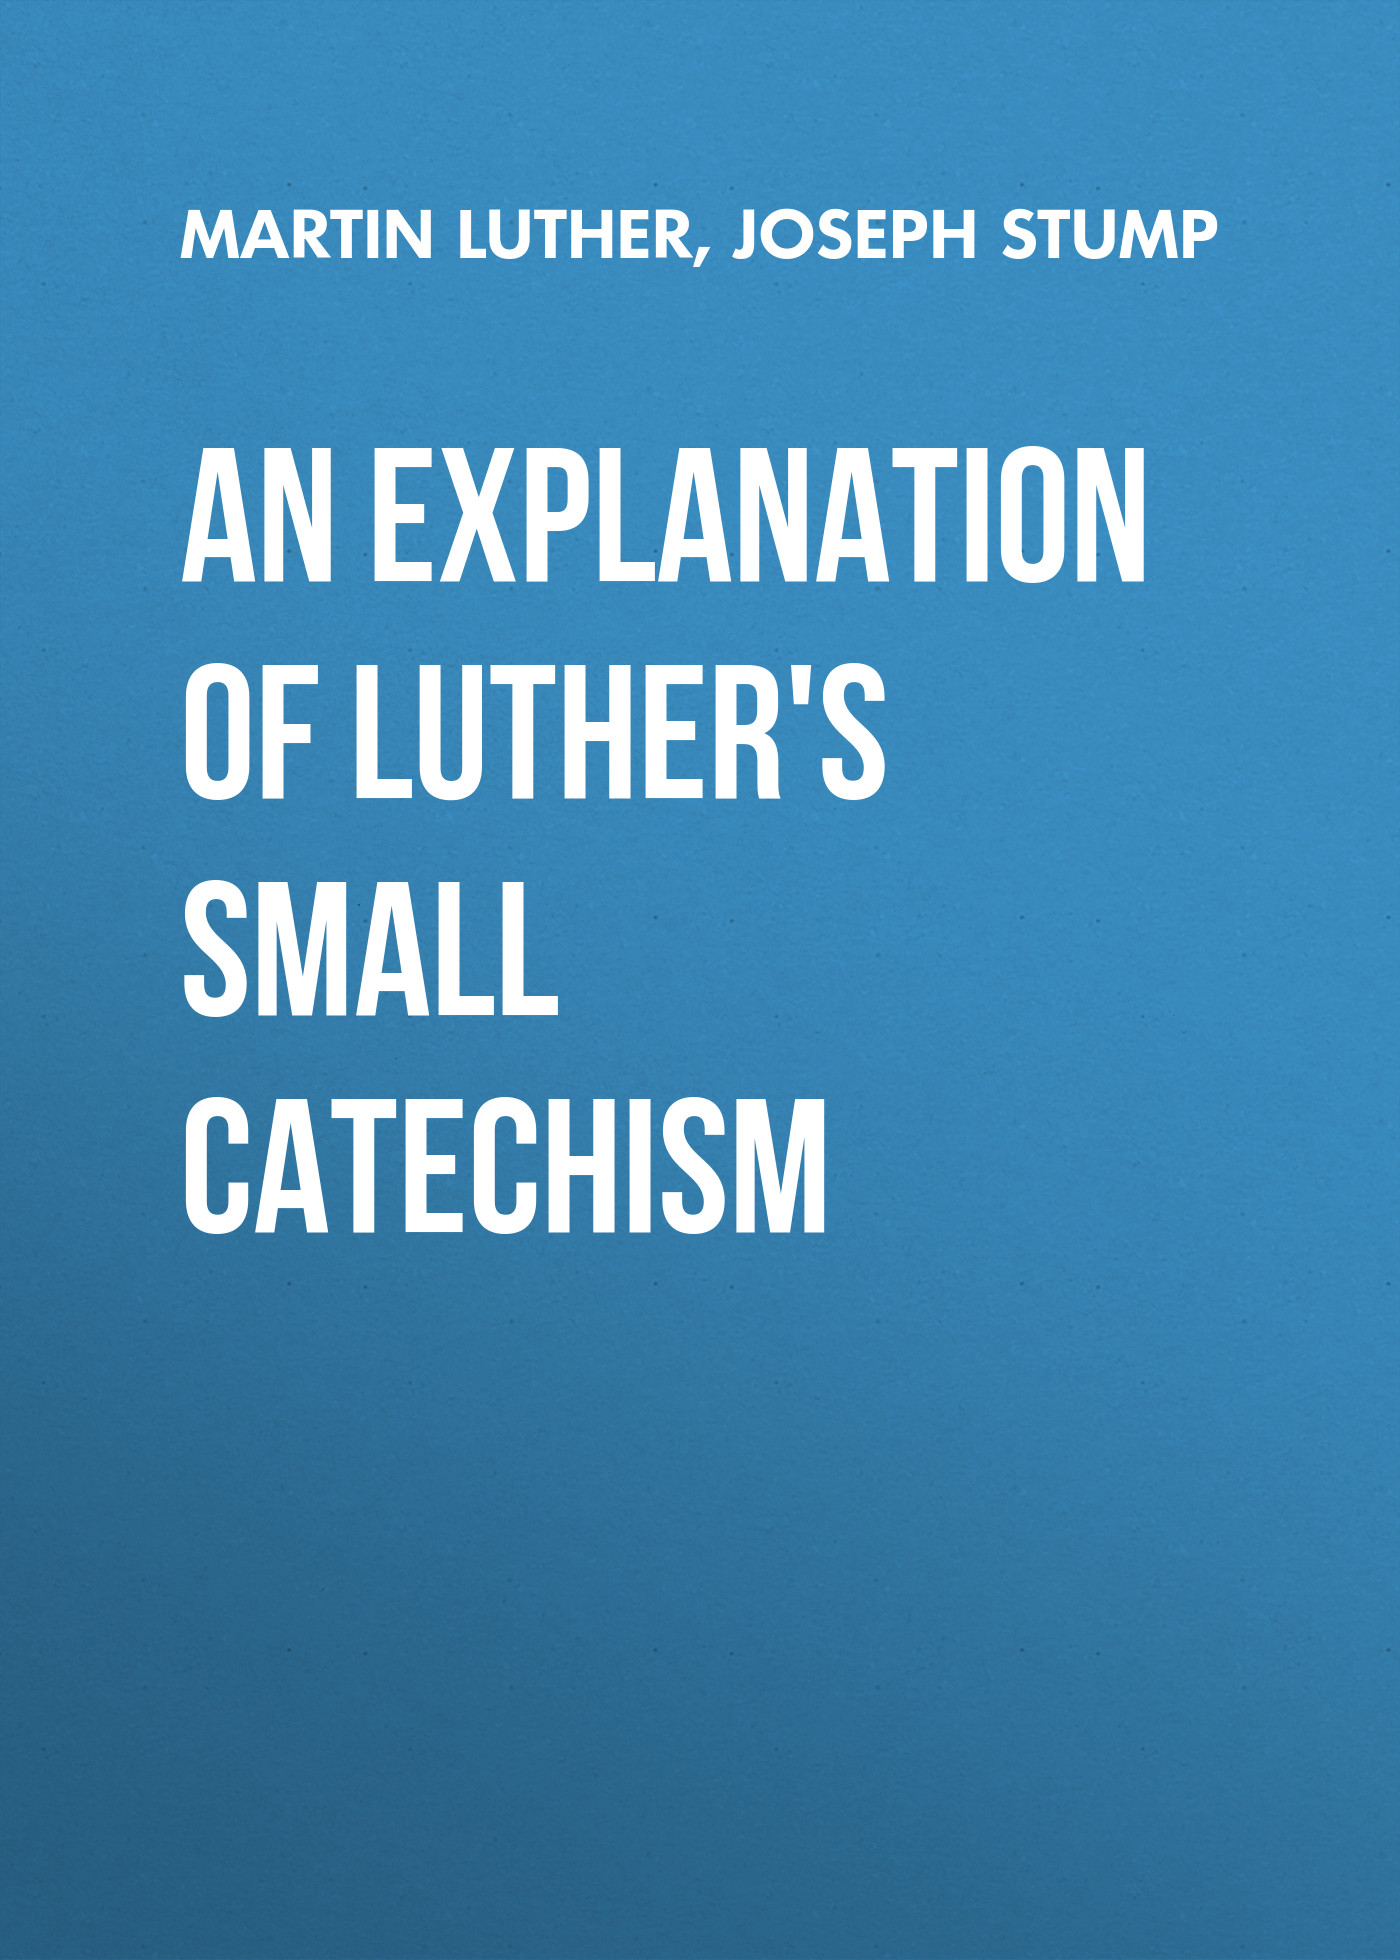 Книга An Explanation of Luther's Small Catechism из серии , созданная Joseph Stump, Martin Luther, может относится к жанру Зарубежная классика, Зарубежная эзотерическая и религиозная литература, Философия, Зарубежная психология, Зарубежная старинная литература. Стоимость электронной книги An Explanation of Luther's Small Catechism с идентификатором 35006393 составляет 0 руб.